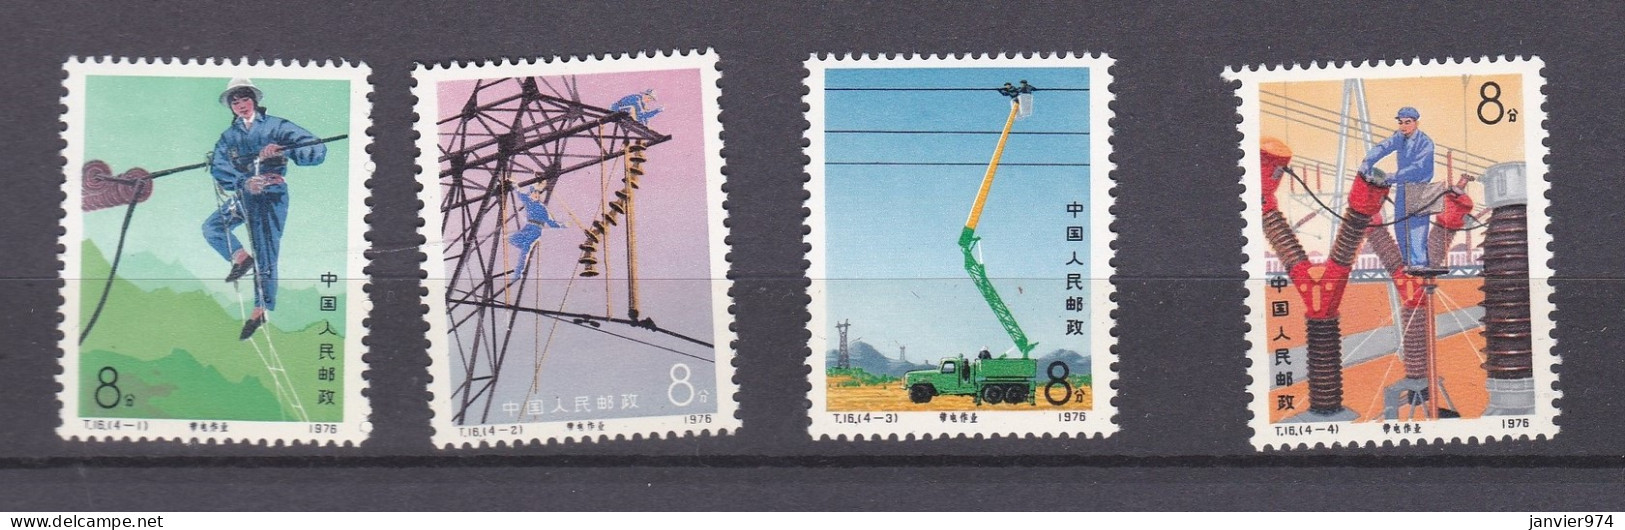 Chine 1976 La Serie Complete  Entretien Des Lignes électriques, 4 Timbres Neufs 1296 à 1299 - Nuovi